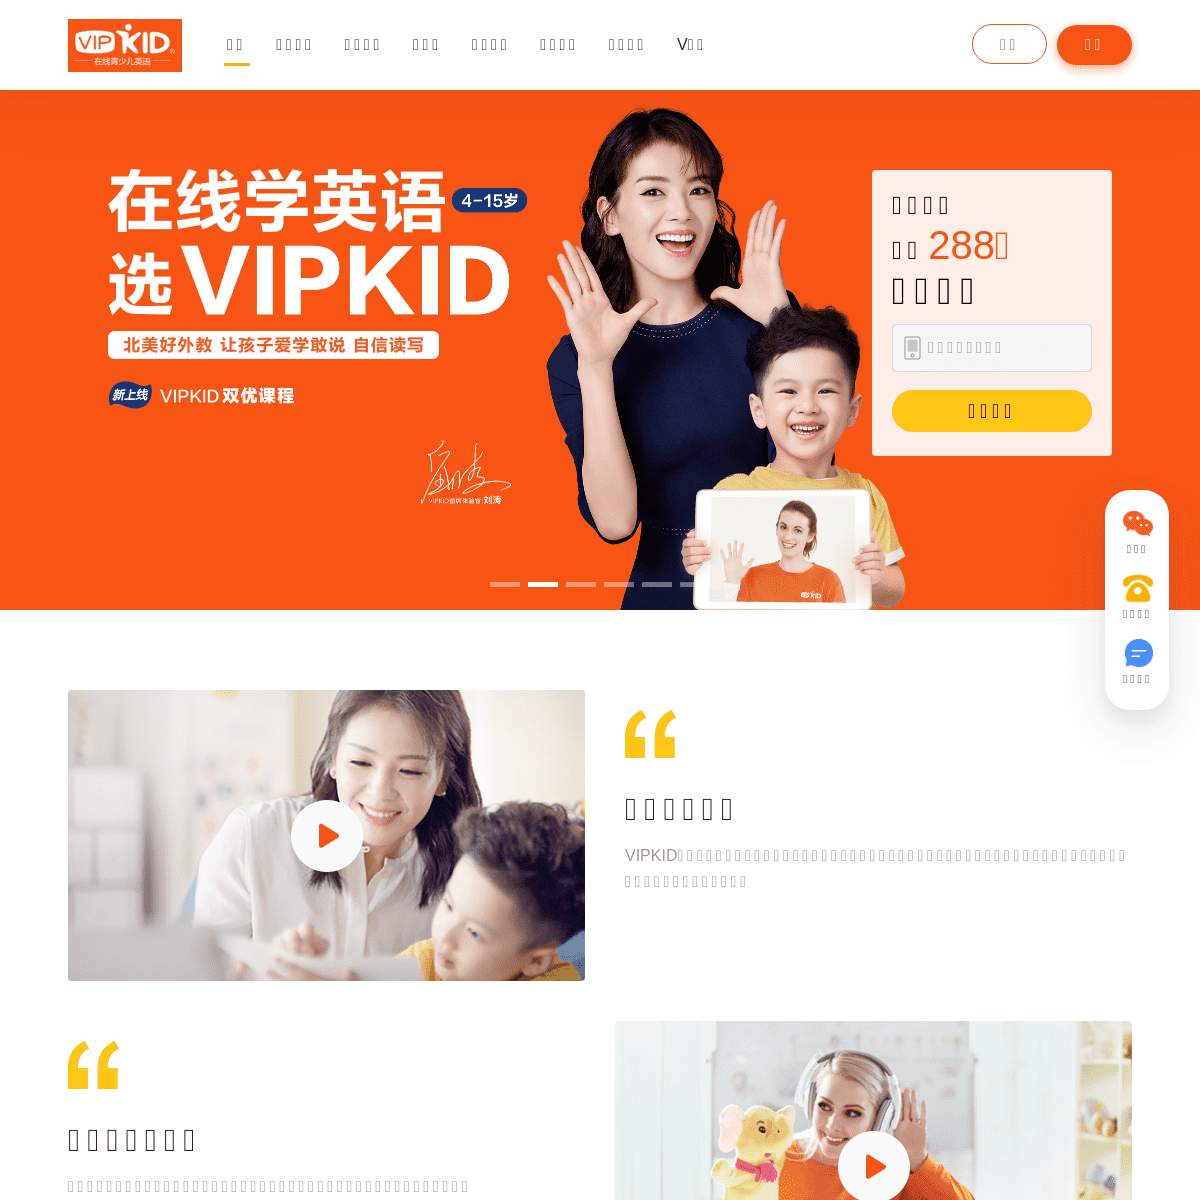 A complete backup of vipkid.com.cn